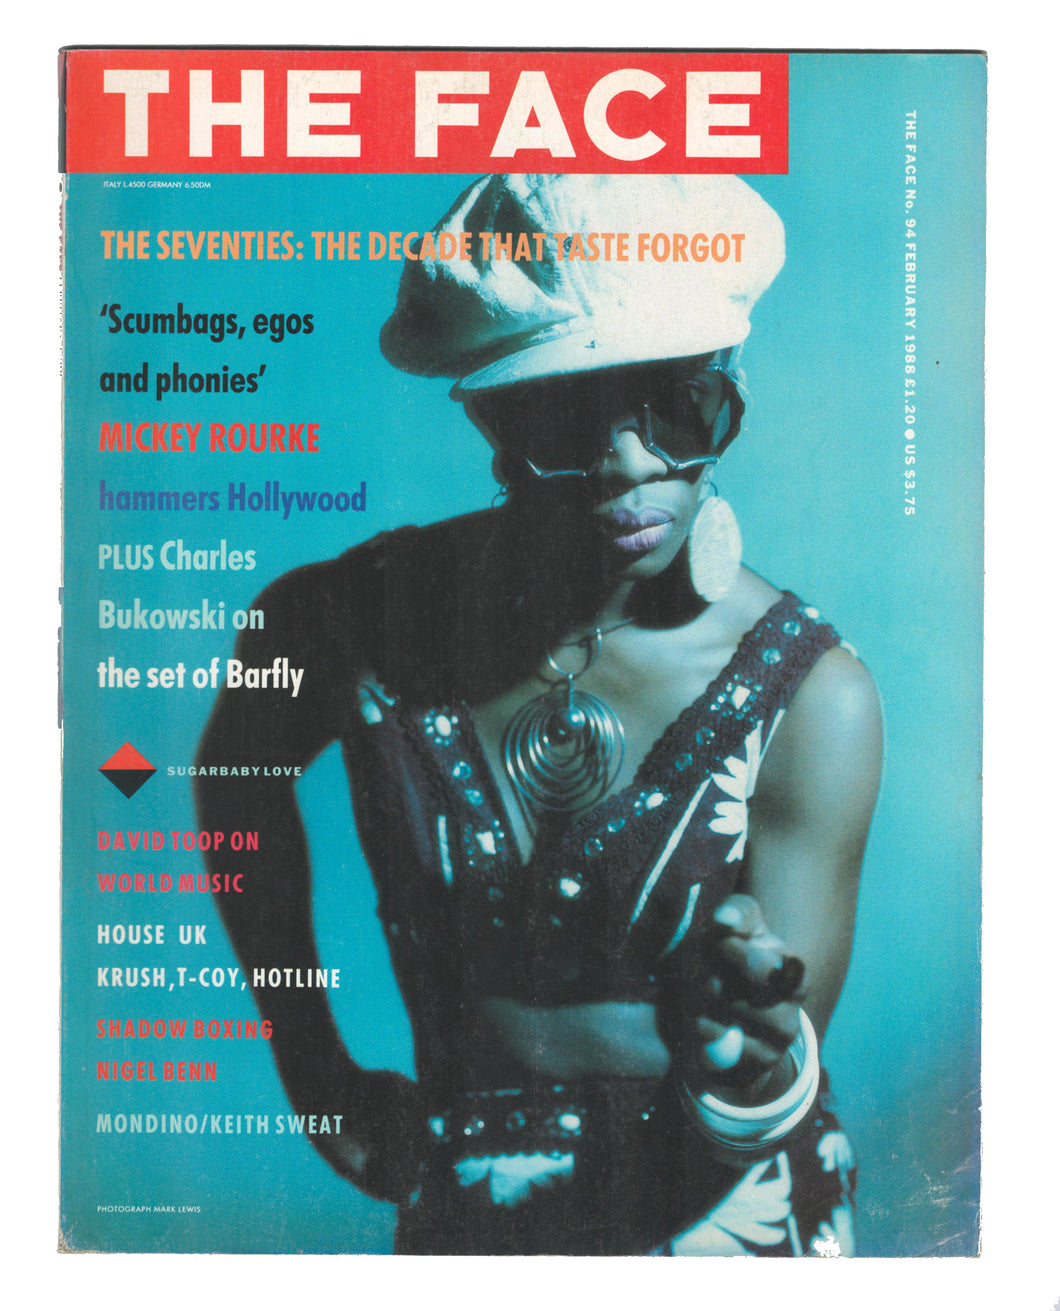 The Face No 94 Feb 1988